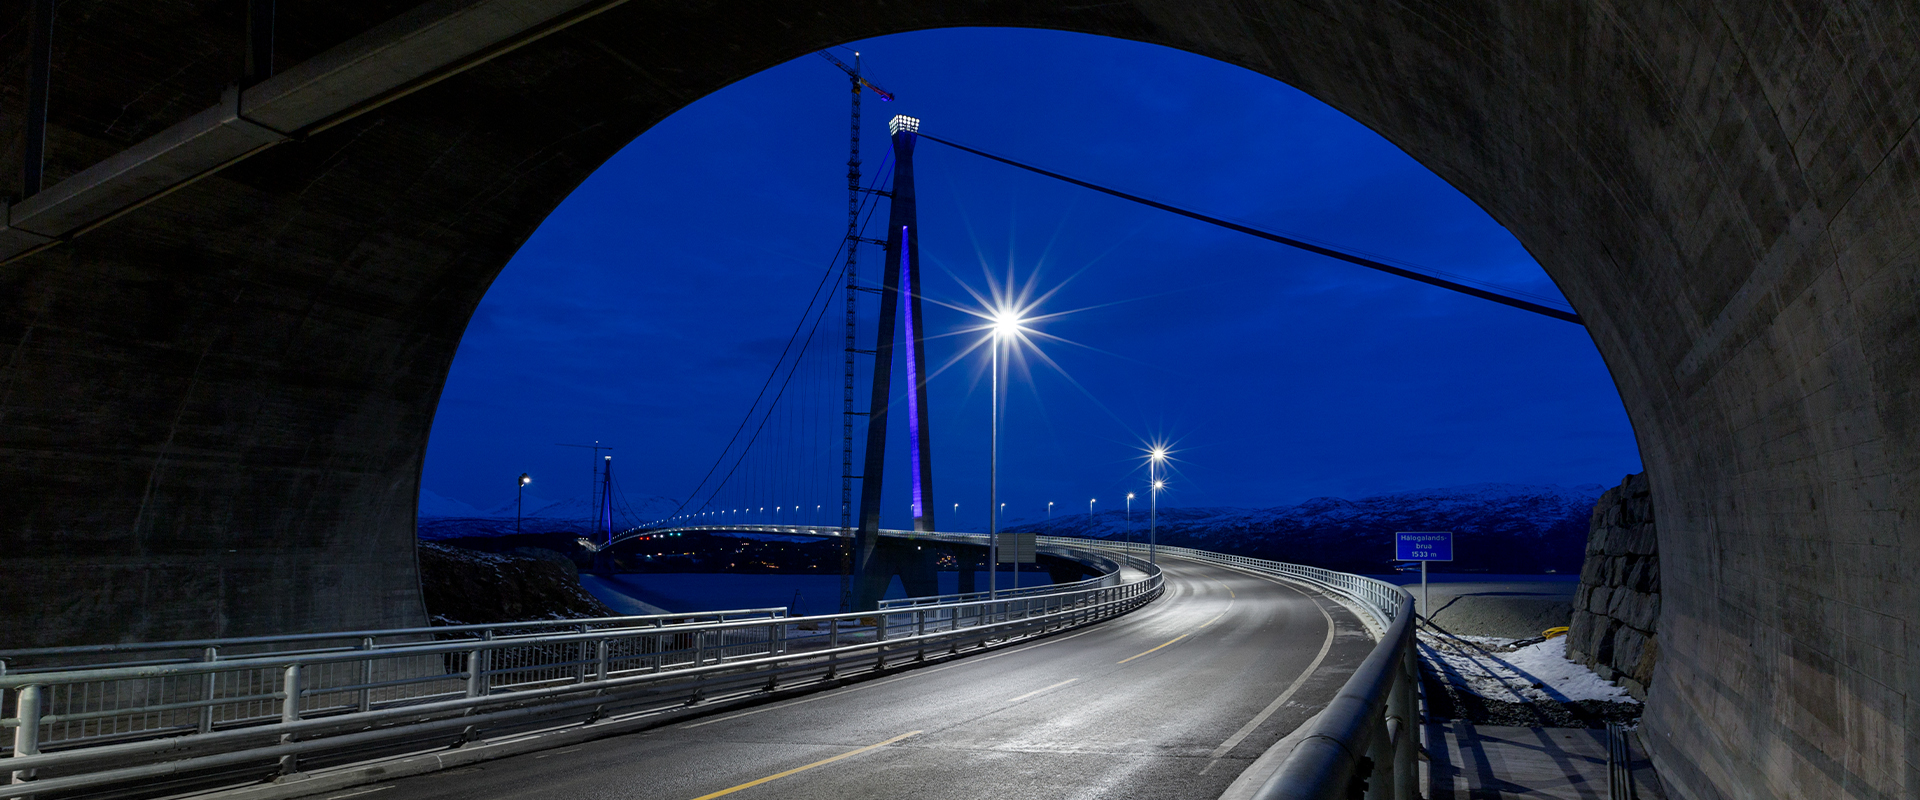 Projecteurs à LED pour l'éclairage des tunnels routiers